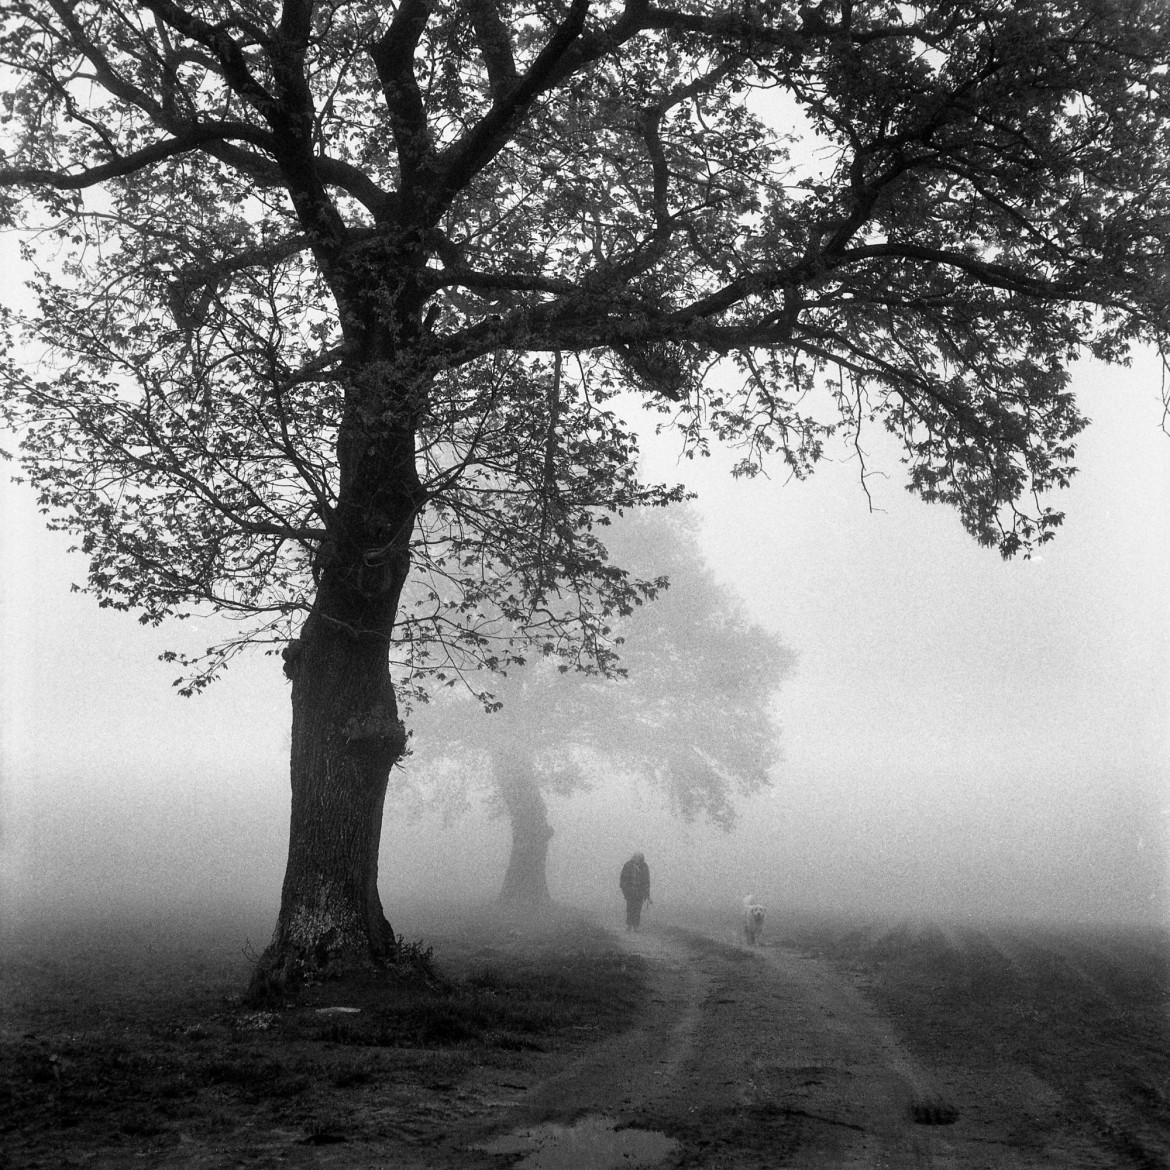 fot. Małgorzata Szura Piwnik, "A Walk in the Fog", 2. Miejsce w kat. Analog: Landscape / IPA 2020